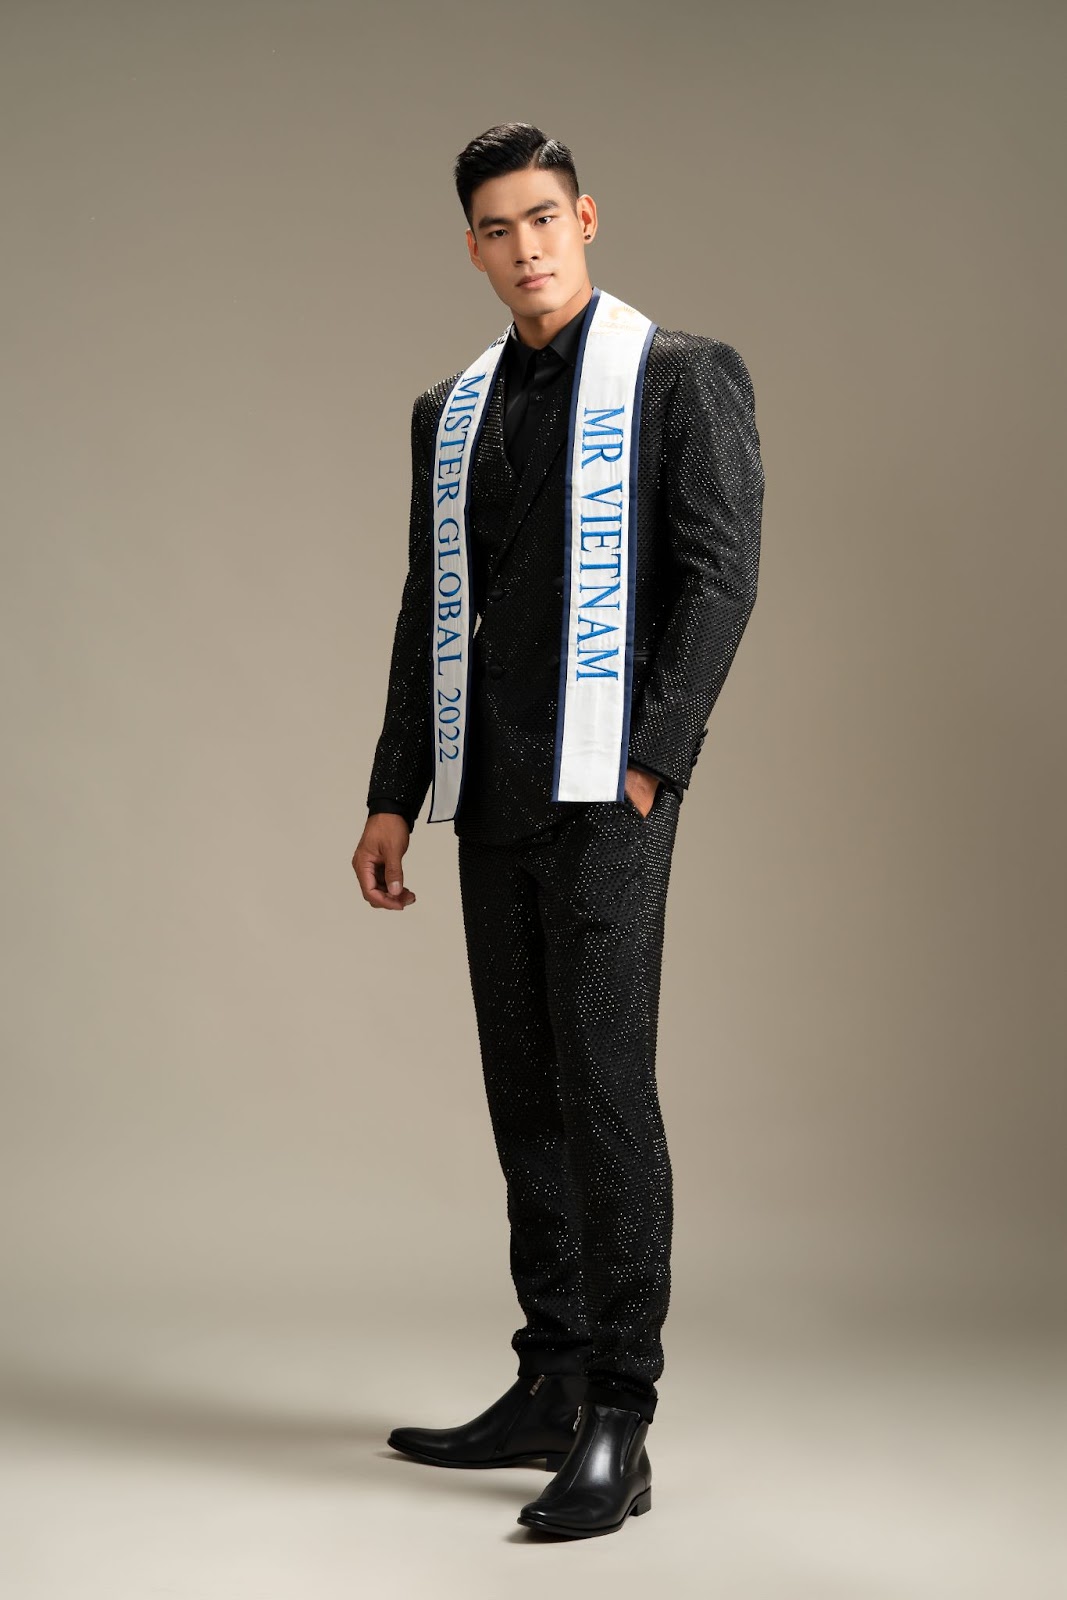 Gặp sự cố khi trình diễn trang phục dân tộc, Danh Chiếu Linh bất ngờ đăng quang ngôi vị Á vương 1 Mister Global mùa thứ 7 - Hình 3